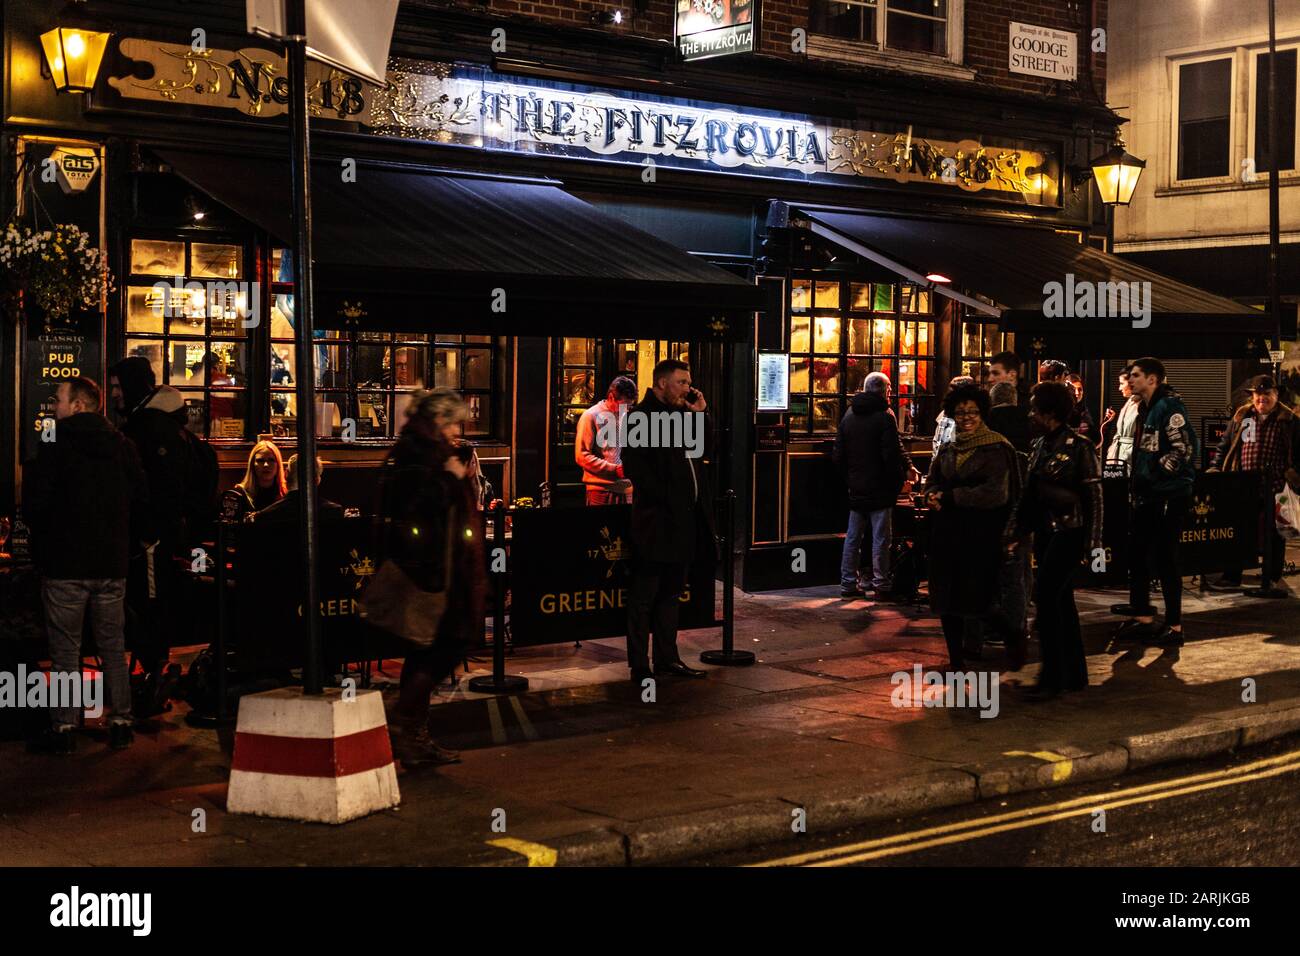 Vue extérieure du pub Fitzrovia la nuit, Goodge Street, Londres, Angleterre, Royaume-Uni. Banque D'Images